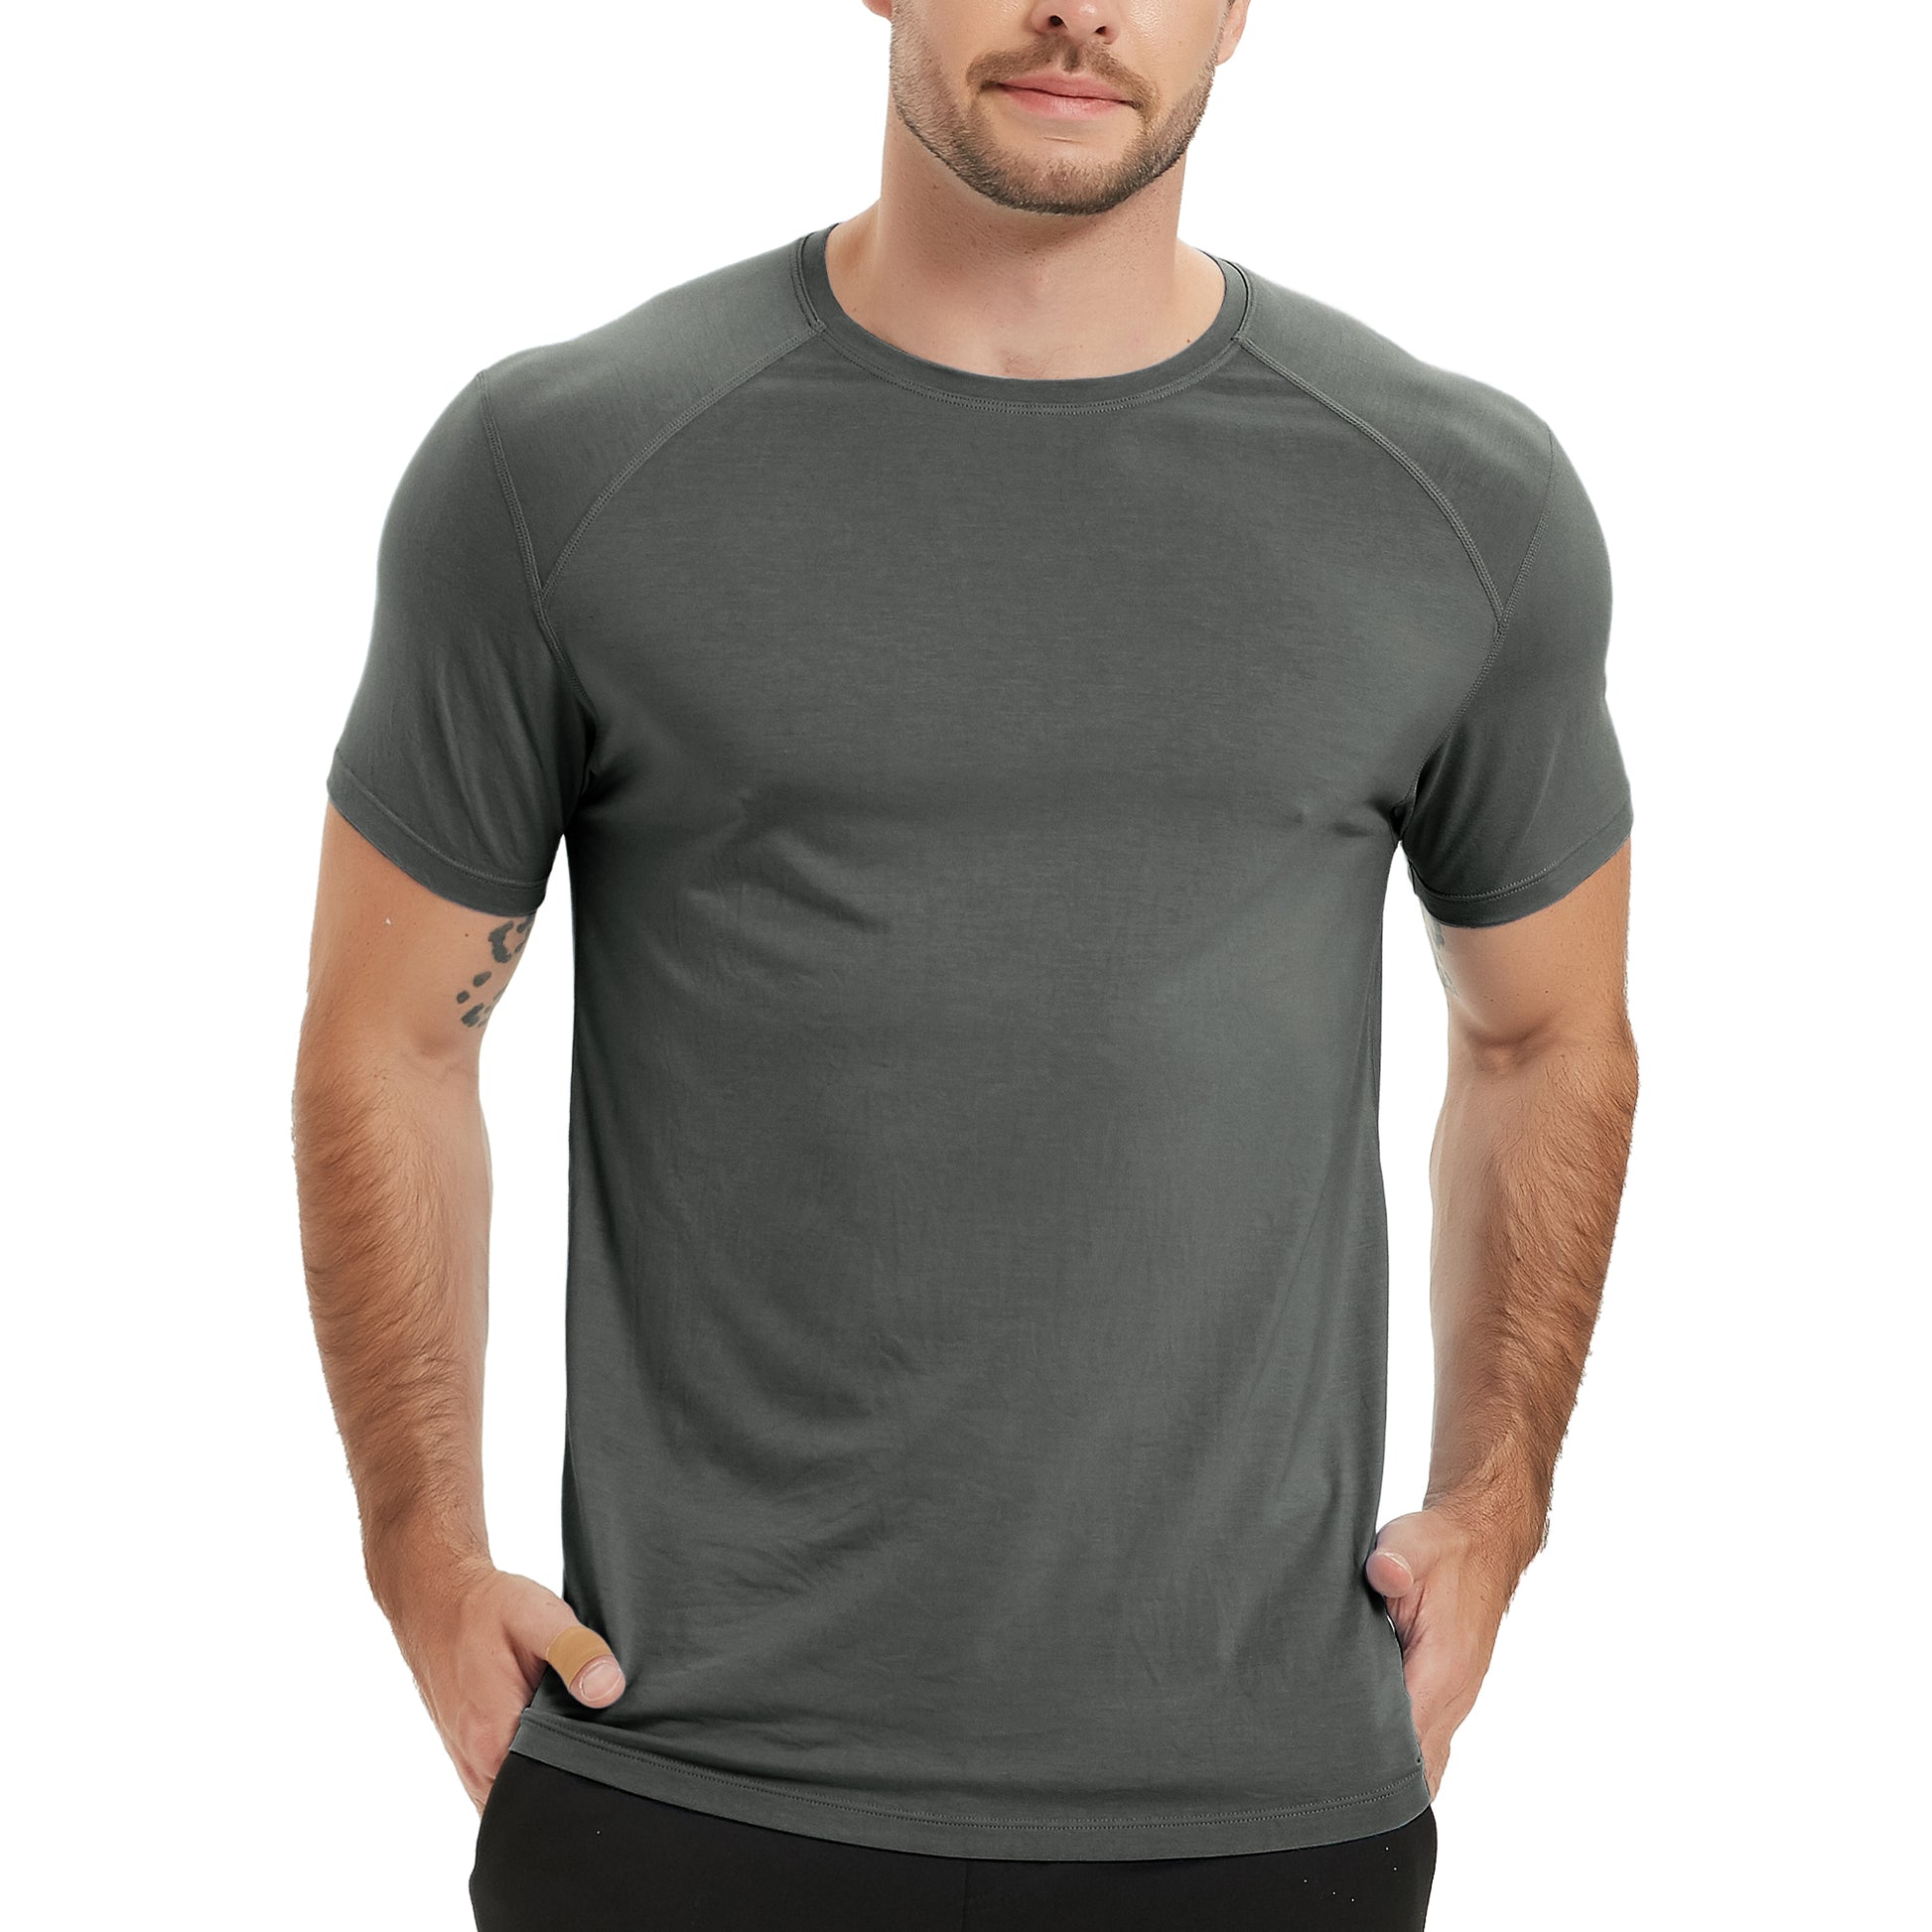 Bamboo Short Sleeve Workout Shirt – NETDRAW